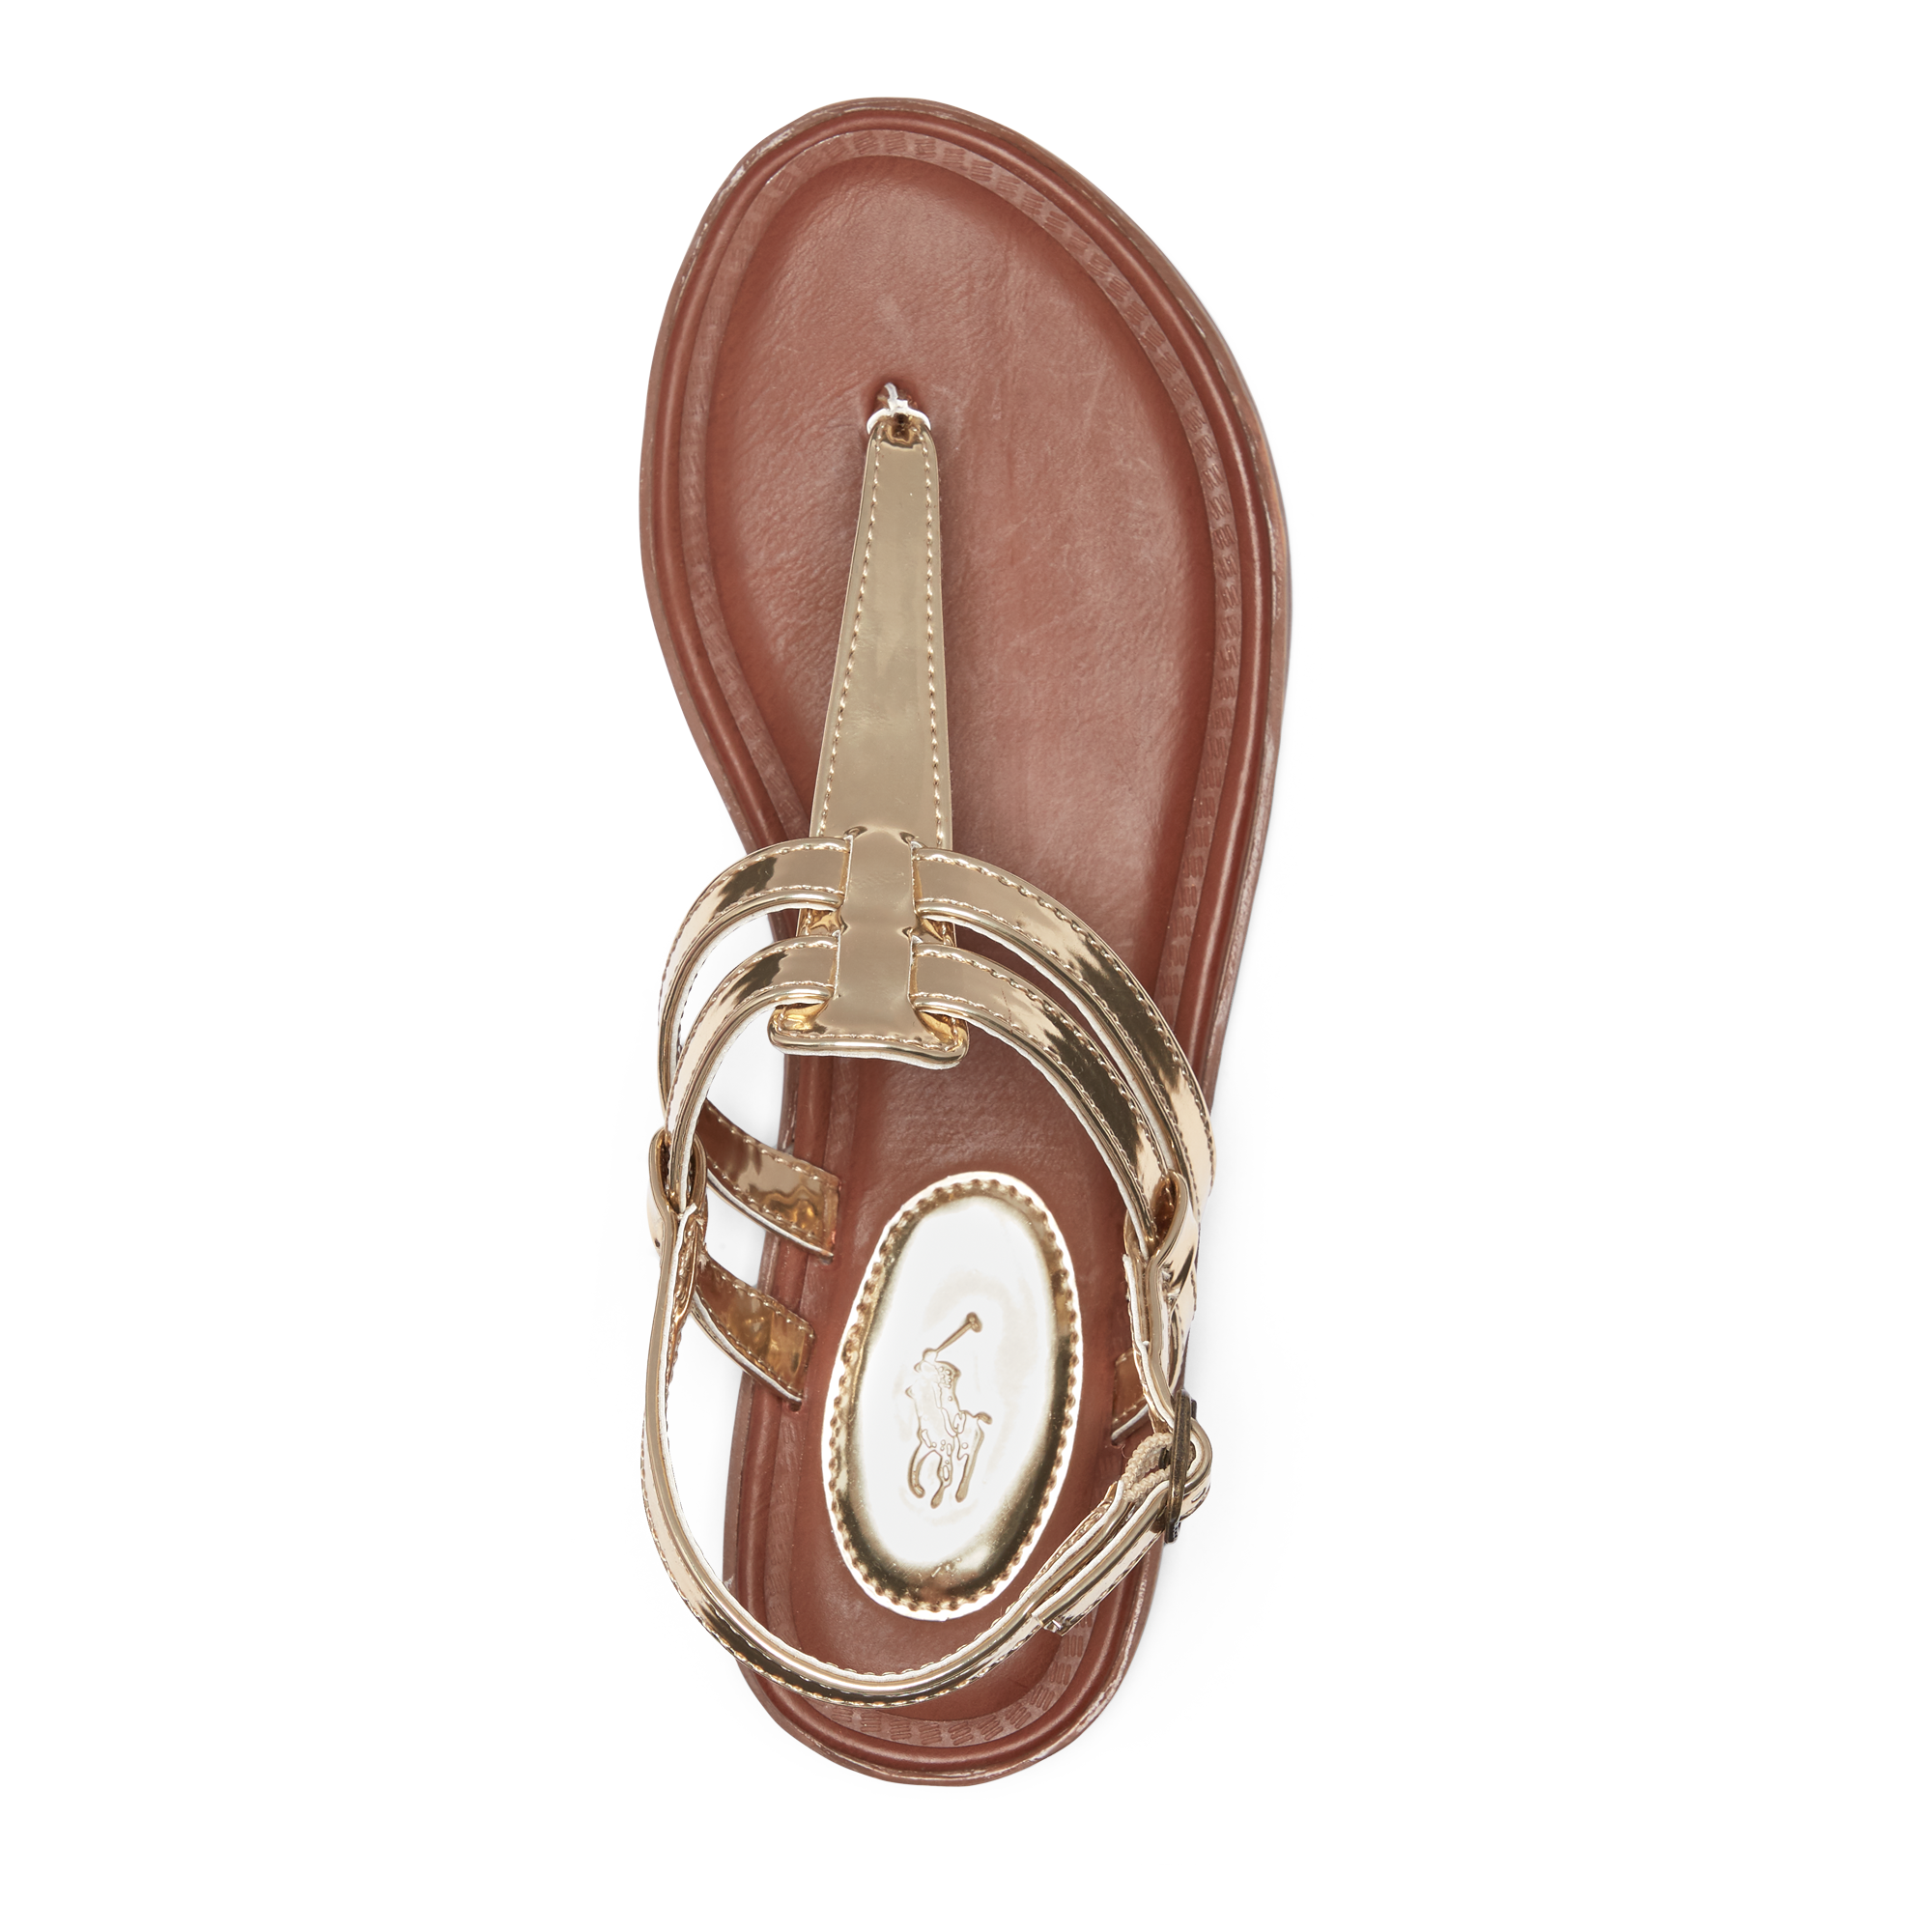 Ralph Lauren Tierney Metallic Sandal. 3